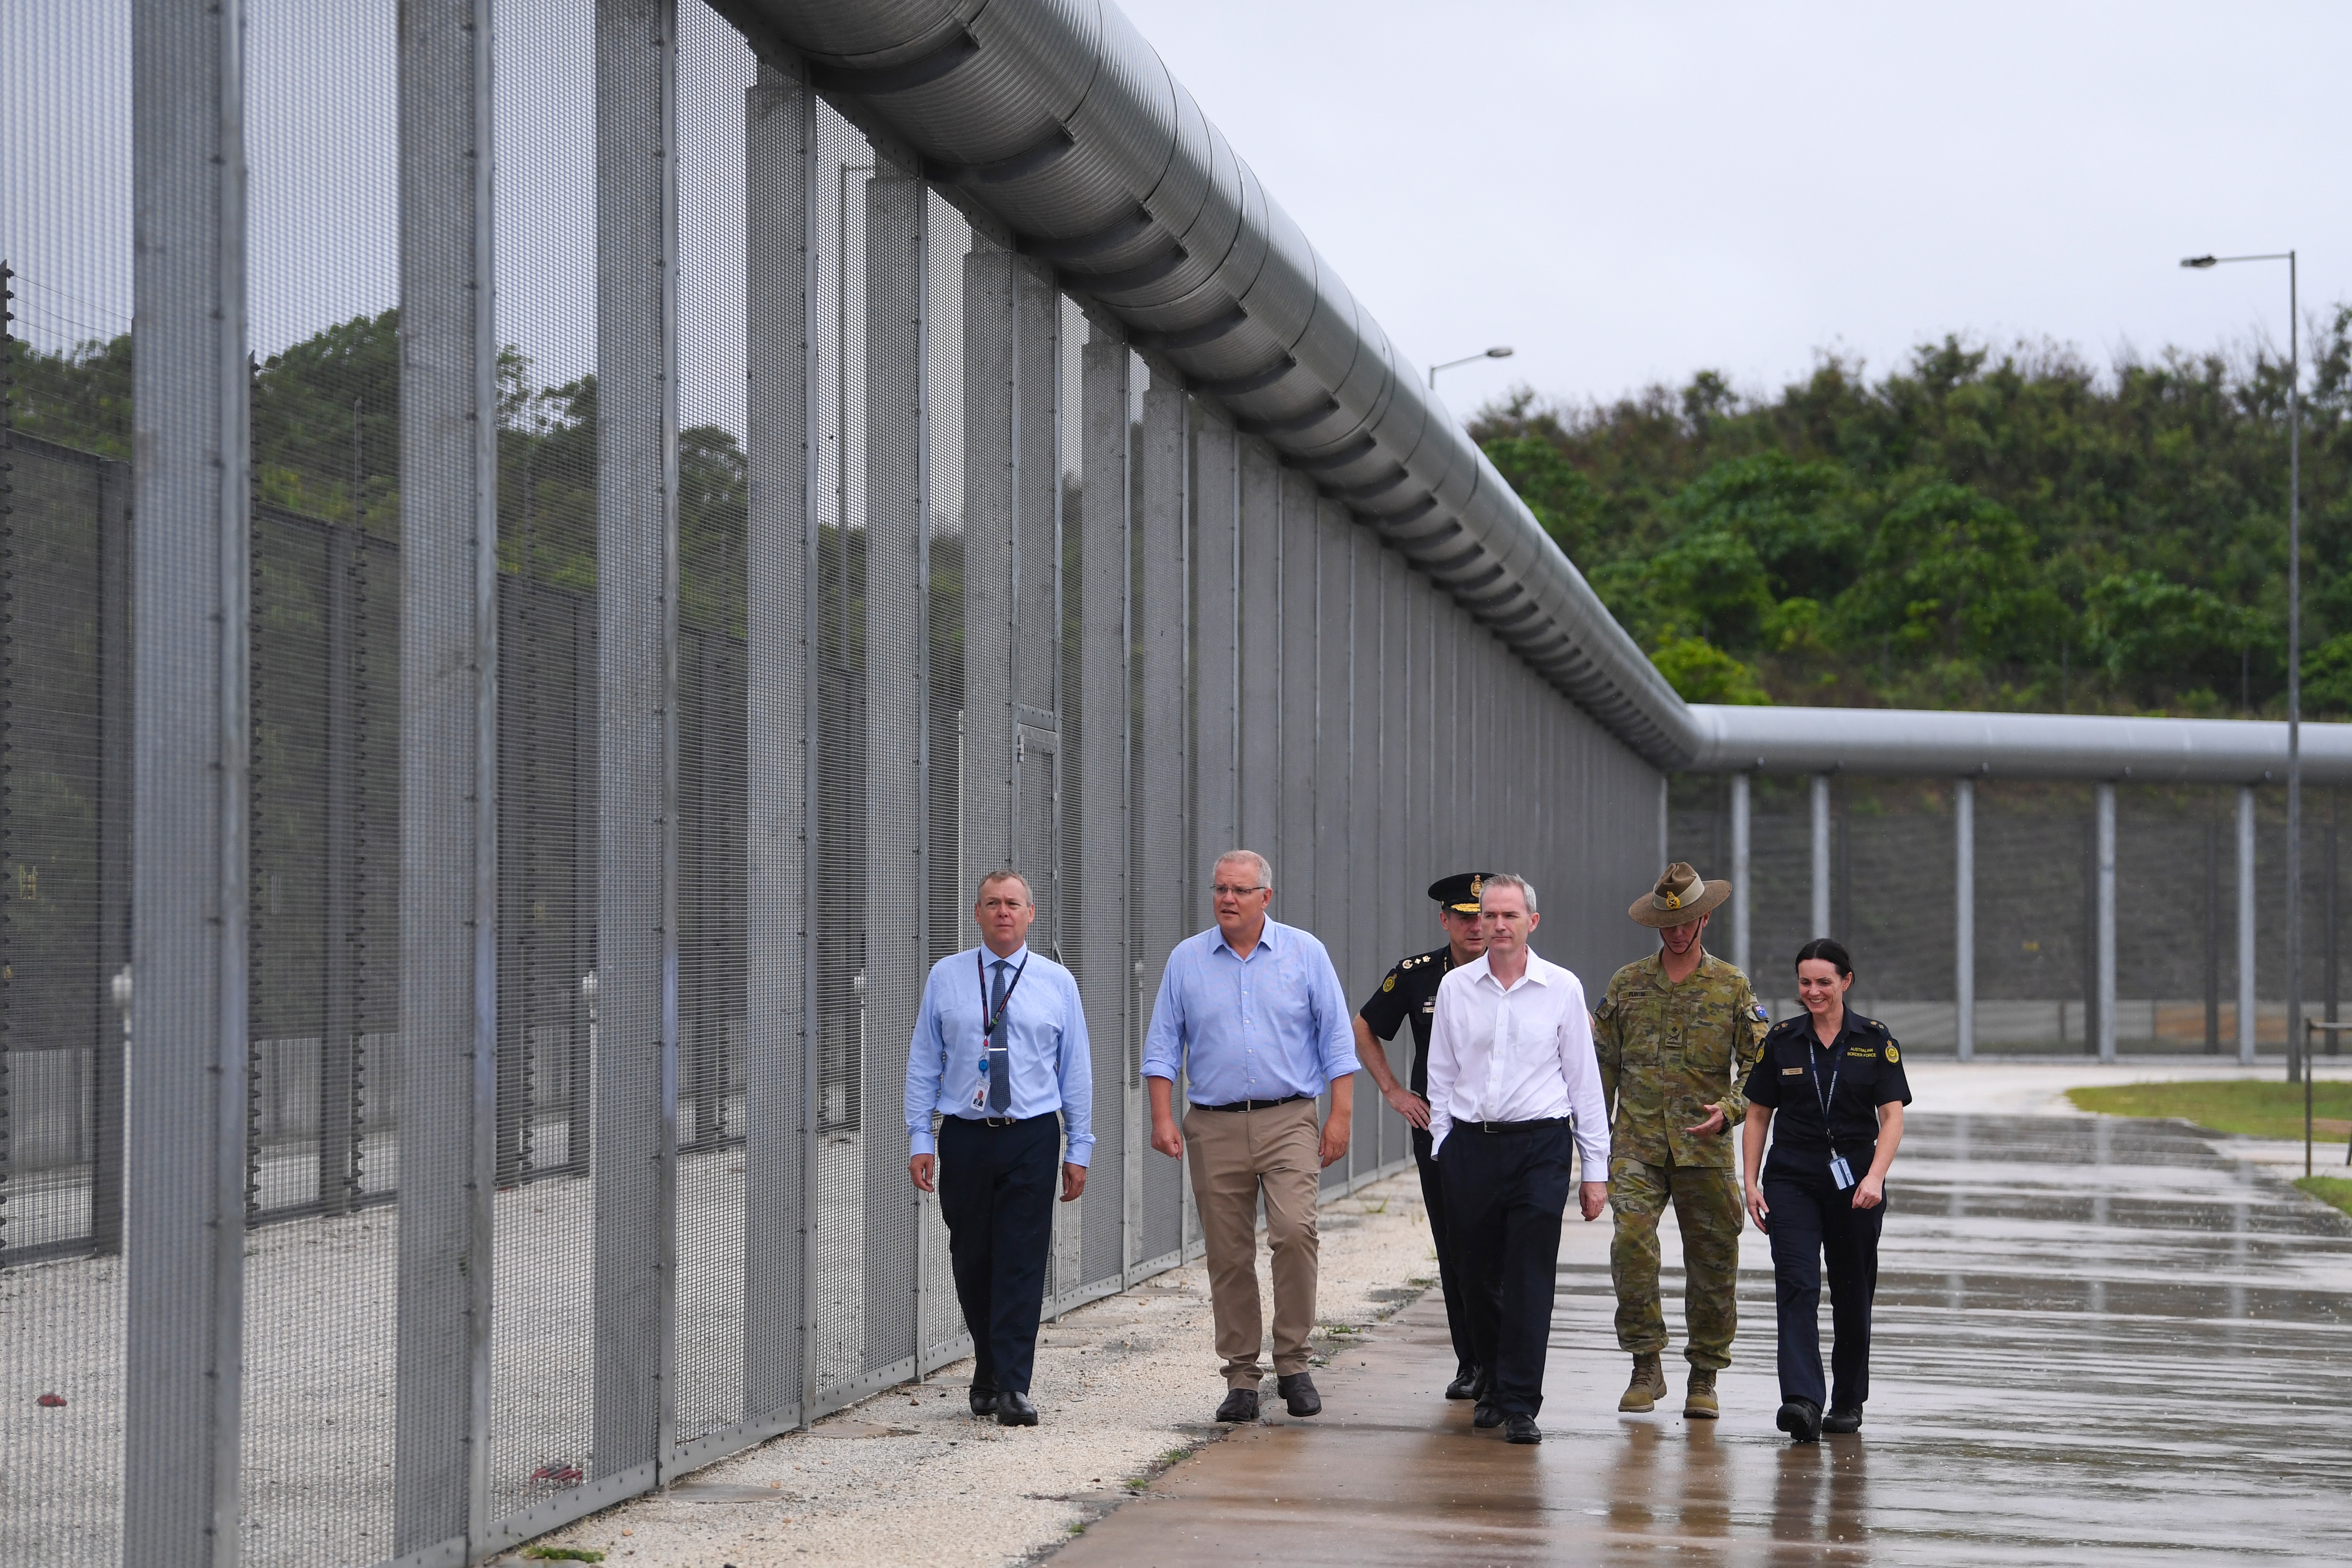 صورة لرئيس الوزراء الأسترالي سكوت موريسون بالقرب من السياج المحيط أثناء قيامه بجولة في مركز احتجاز نورث ويست بوينت في جزيرة كريسماس